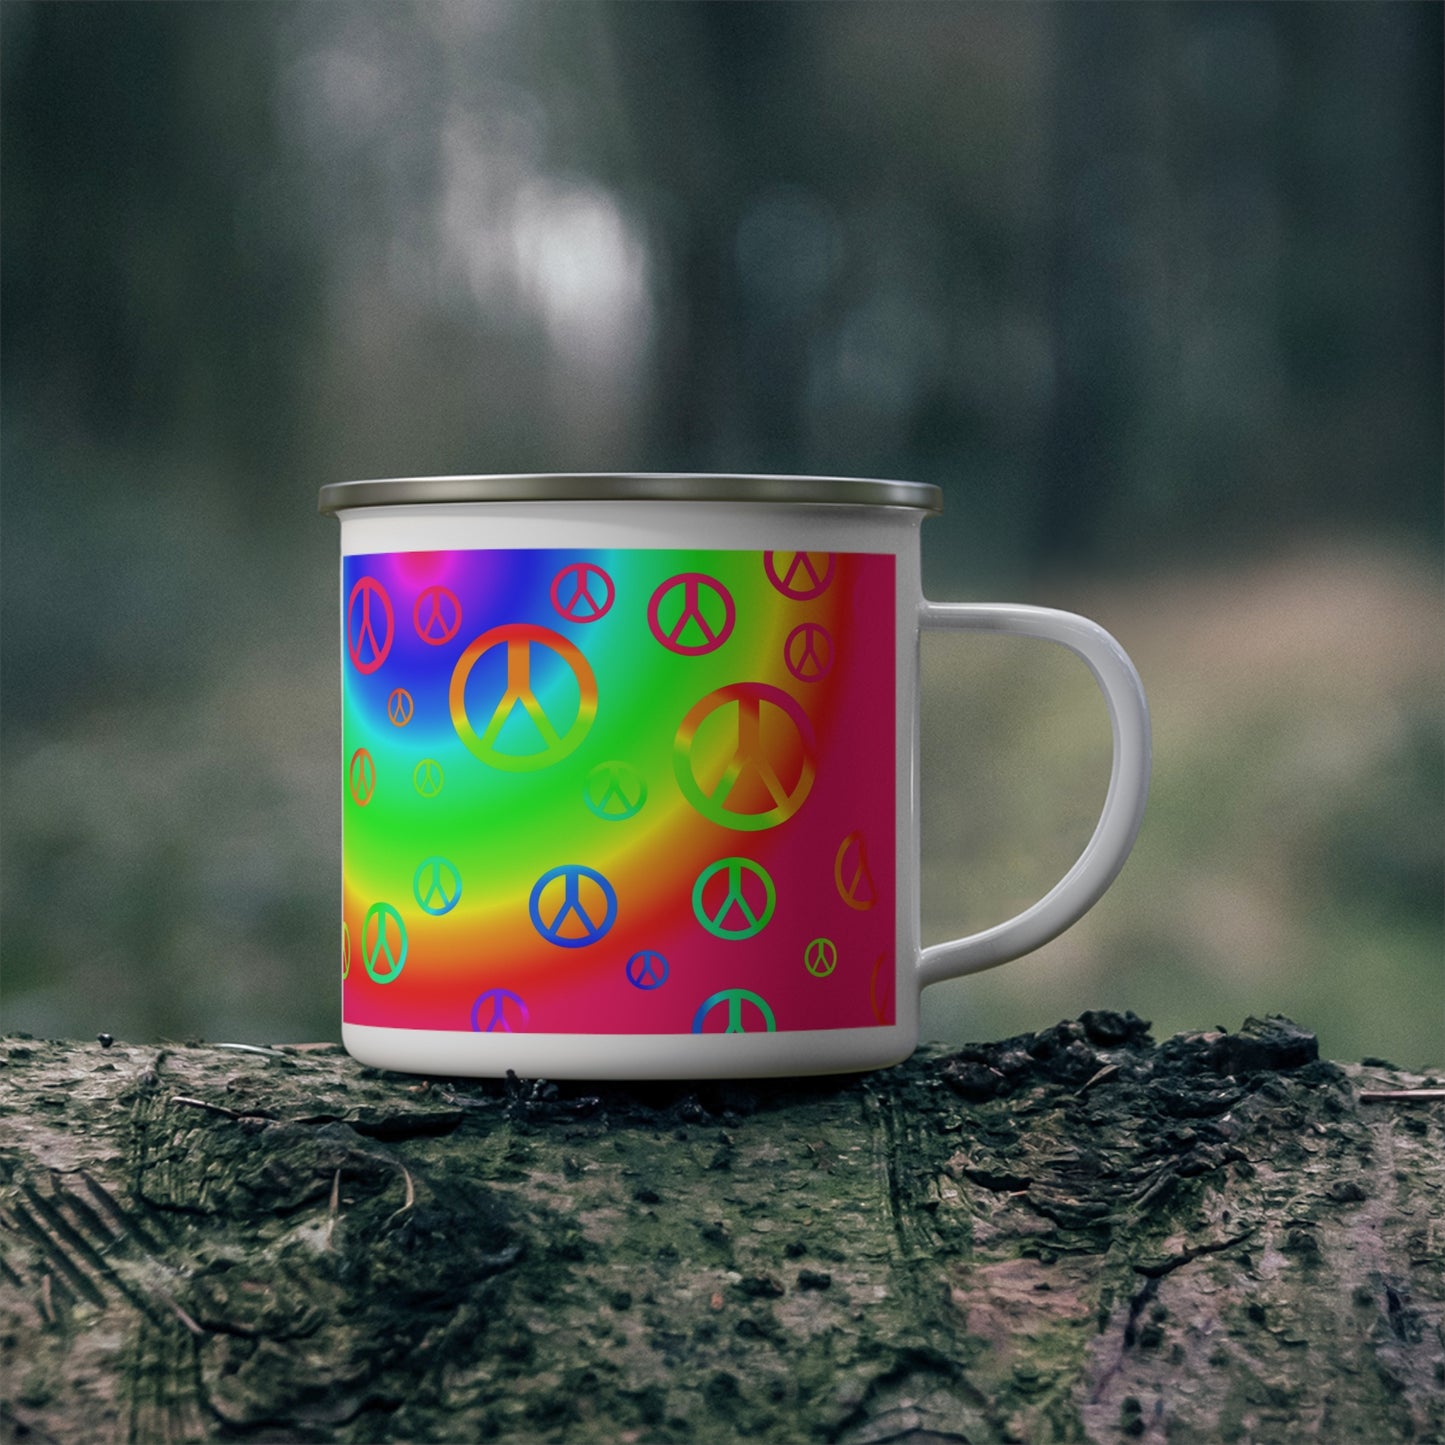 Rainbow Peace Signs Enamel Camping Mug